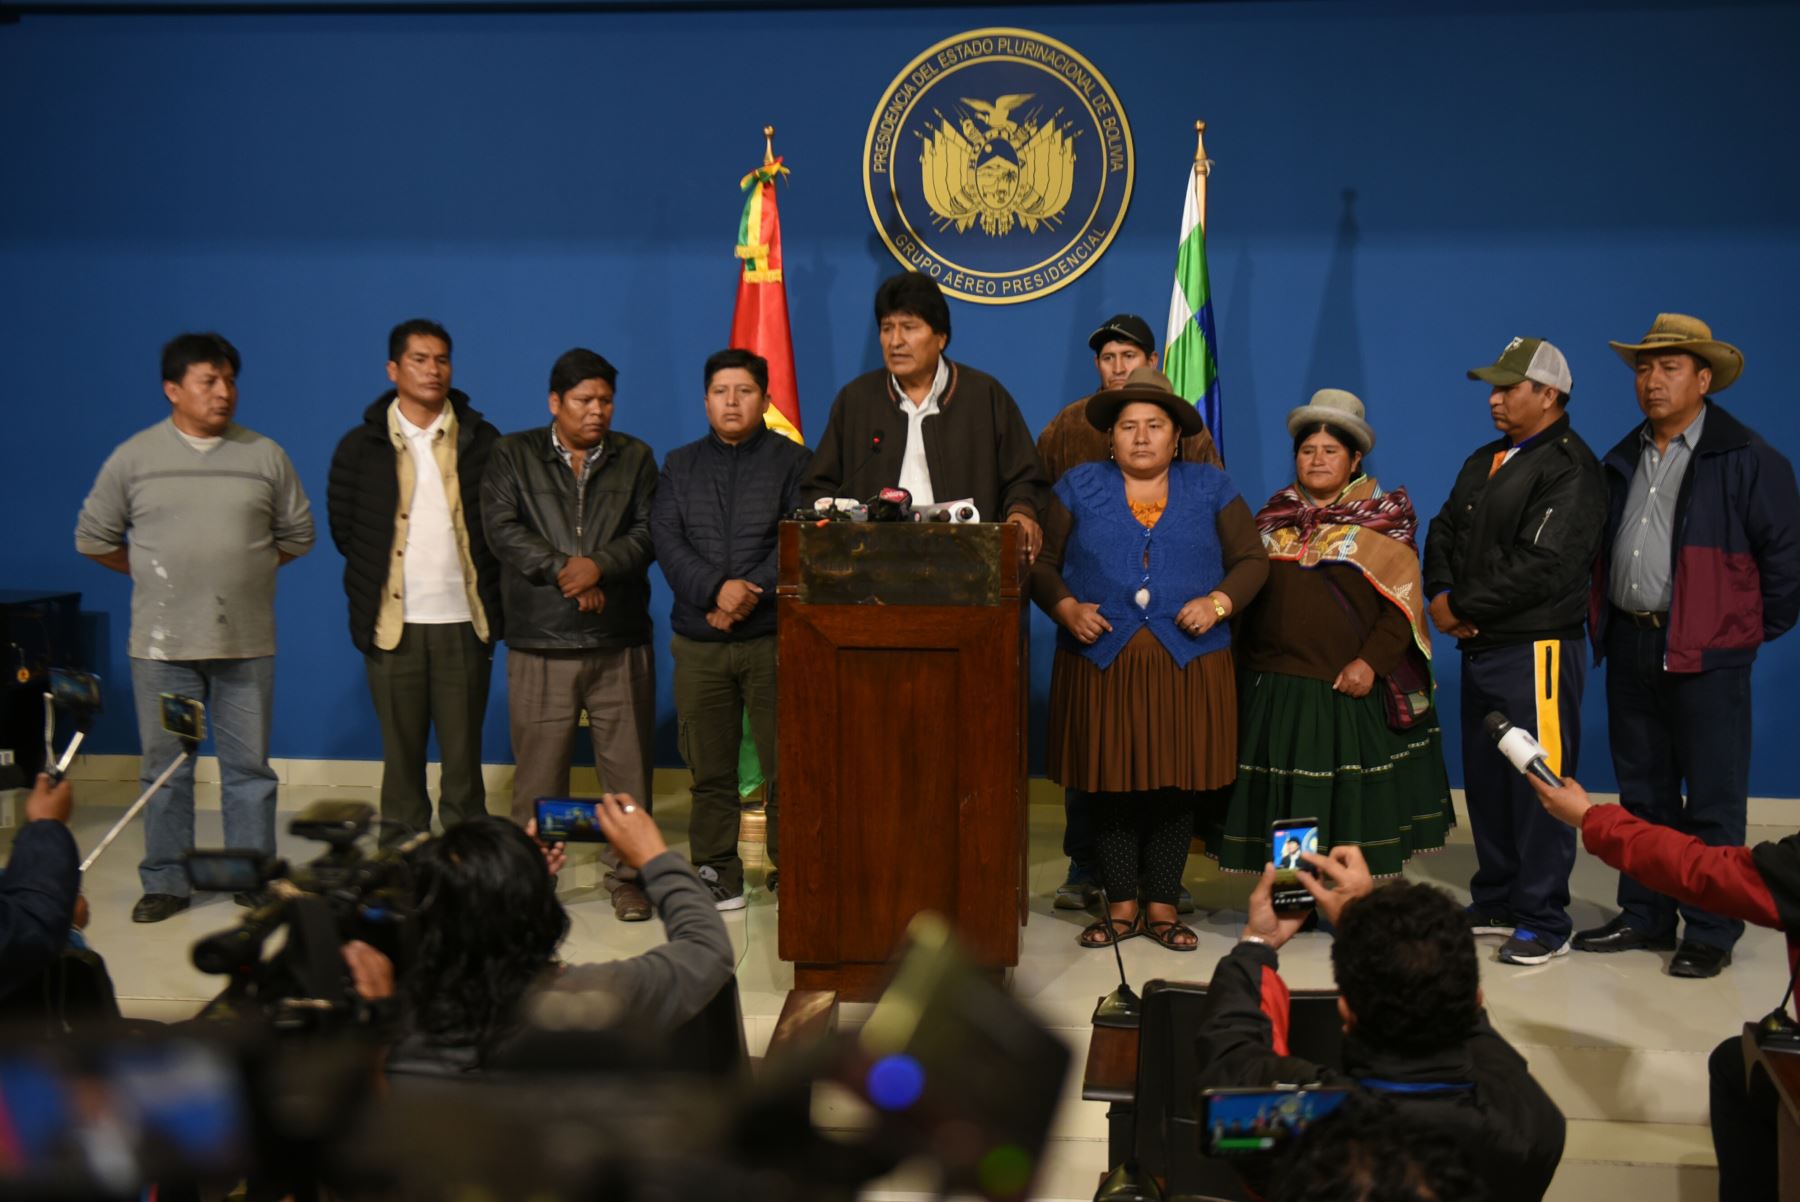 En conferencia de prensa, el presidente Evo Morales convoca a nuevas elecciones en Bolivia.
Foto: Agencia Boliviana de Información